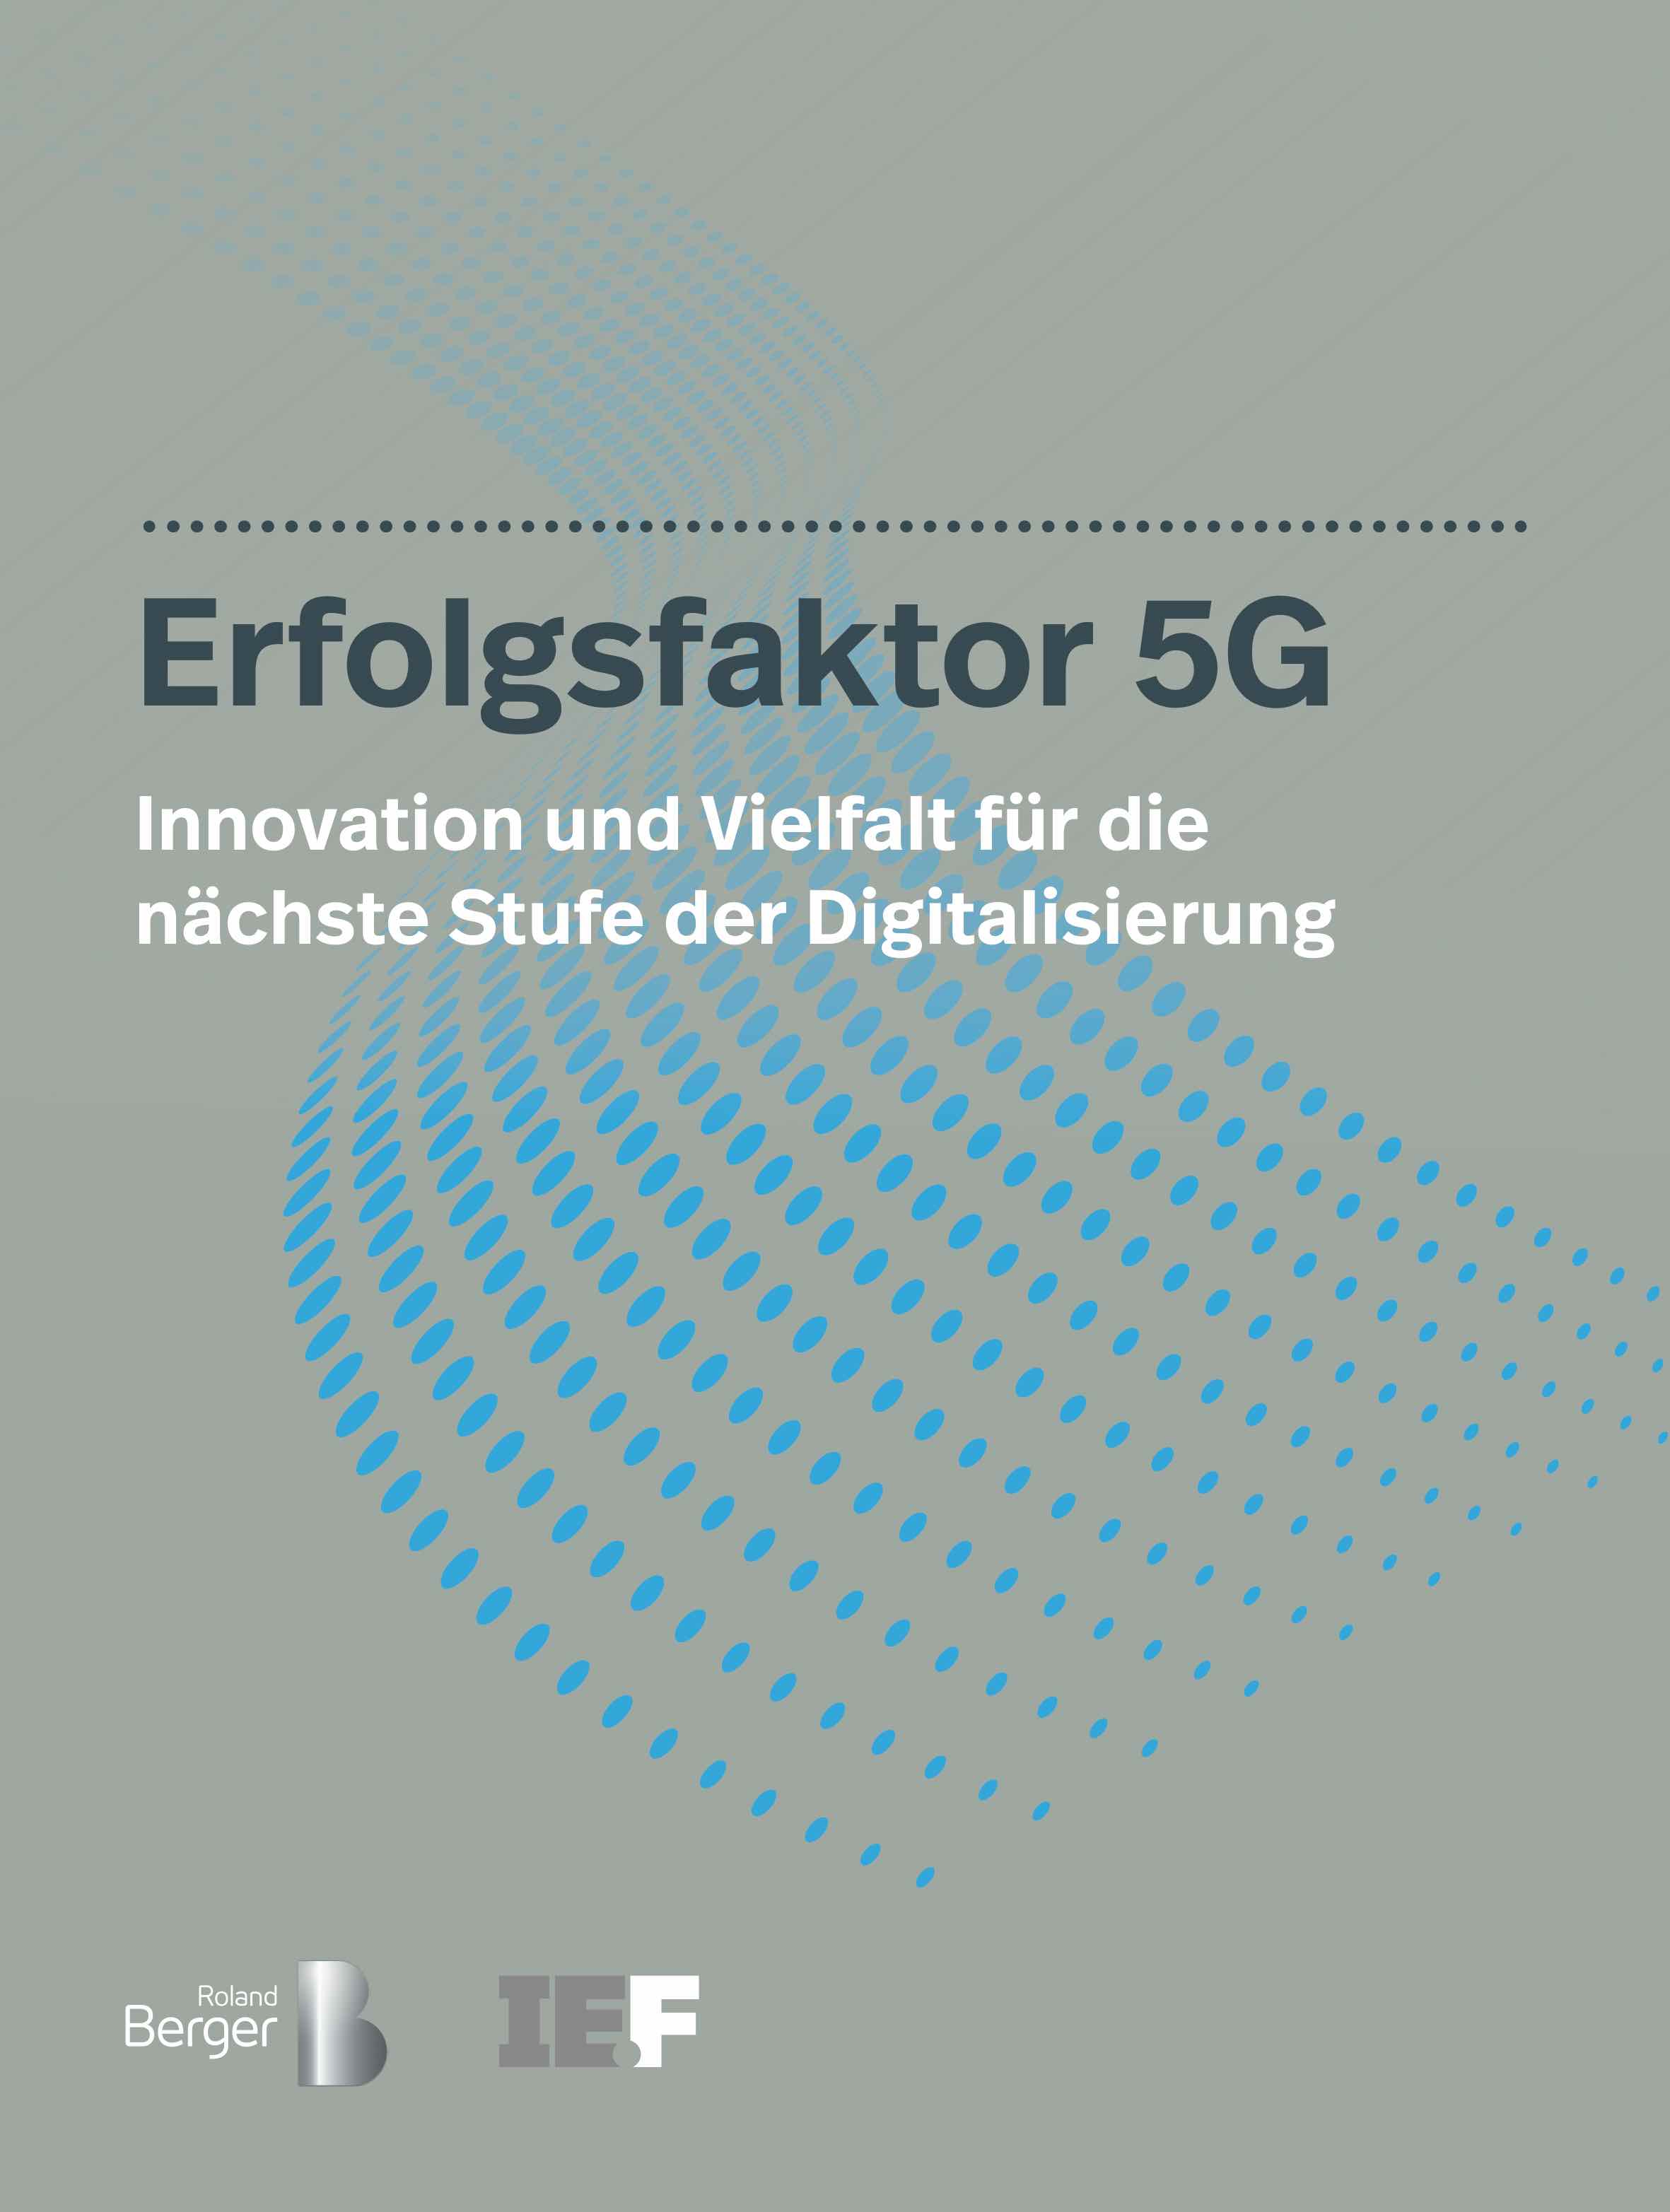 Erfolgsfaktor 5G: Neue Studie der IE.F und Roland Berger (German Only)